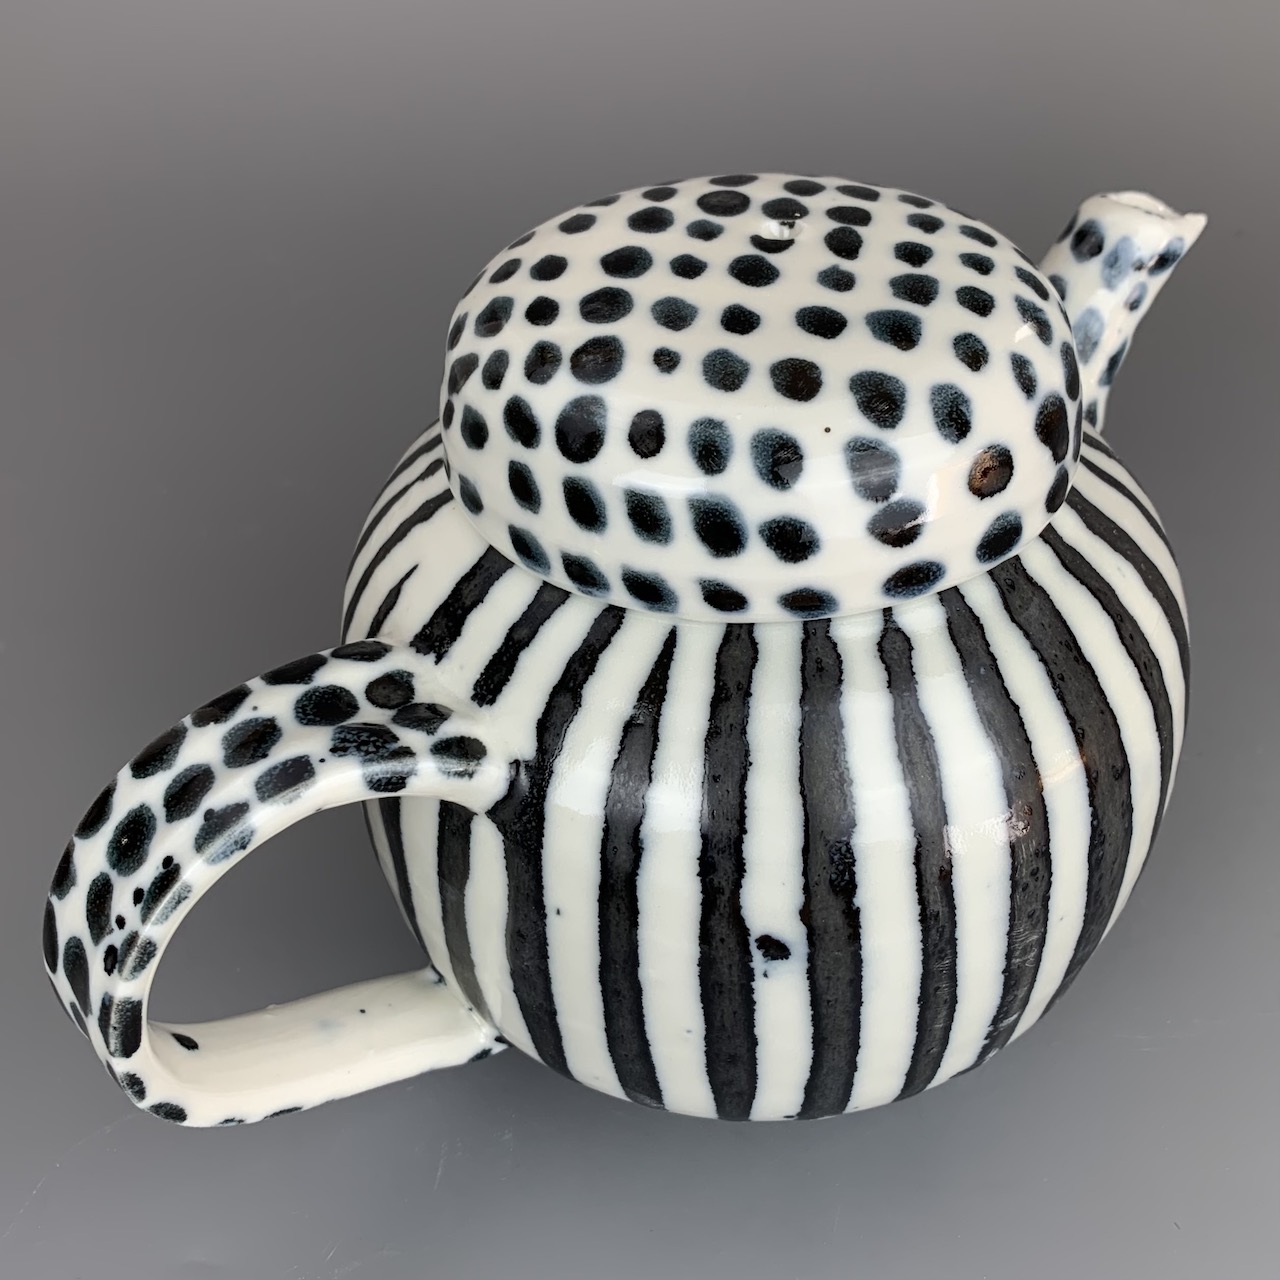 Black and White Stripe Teapot